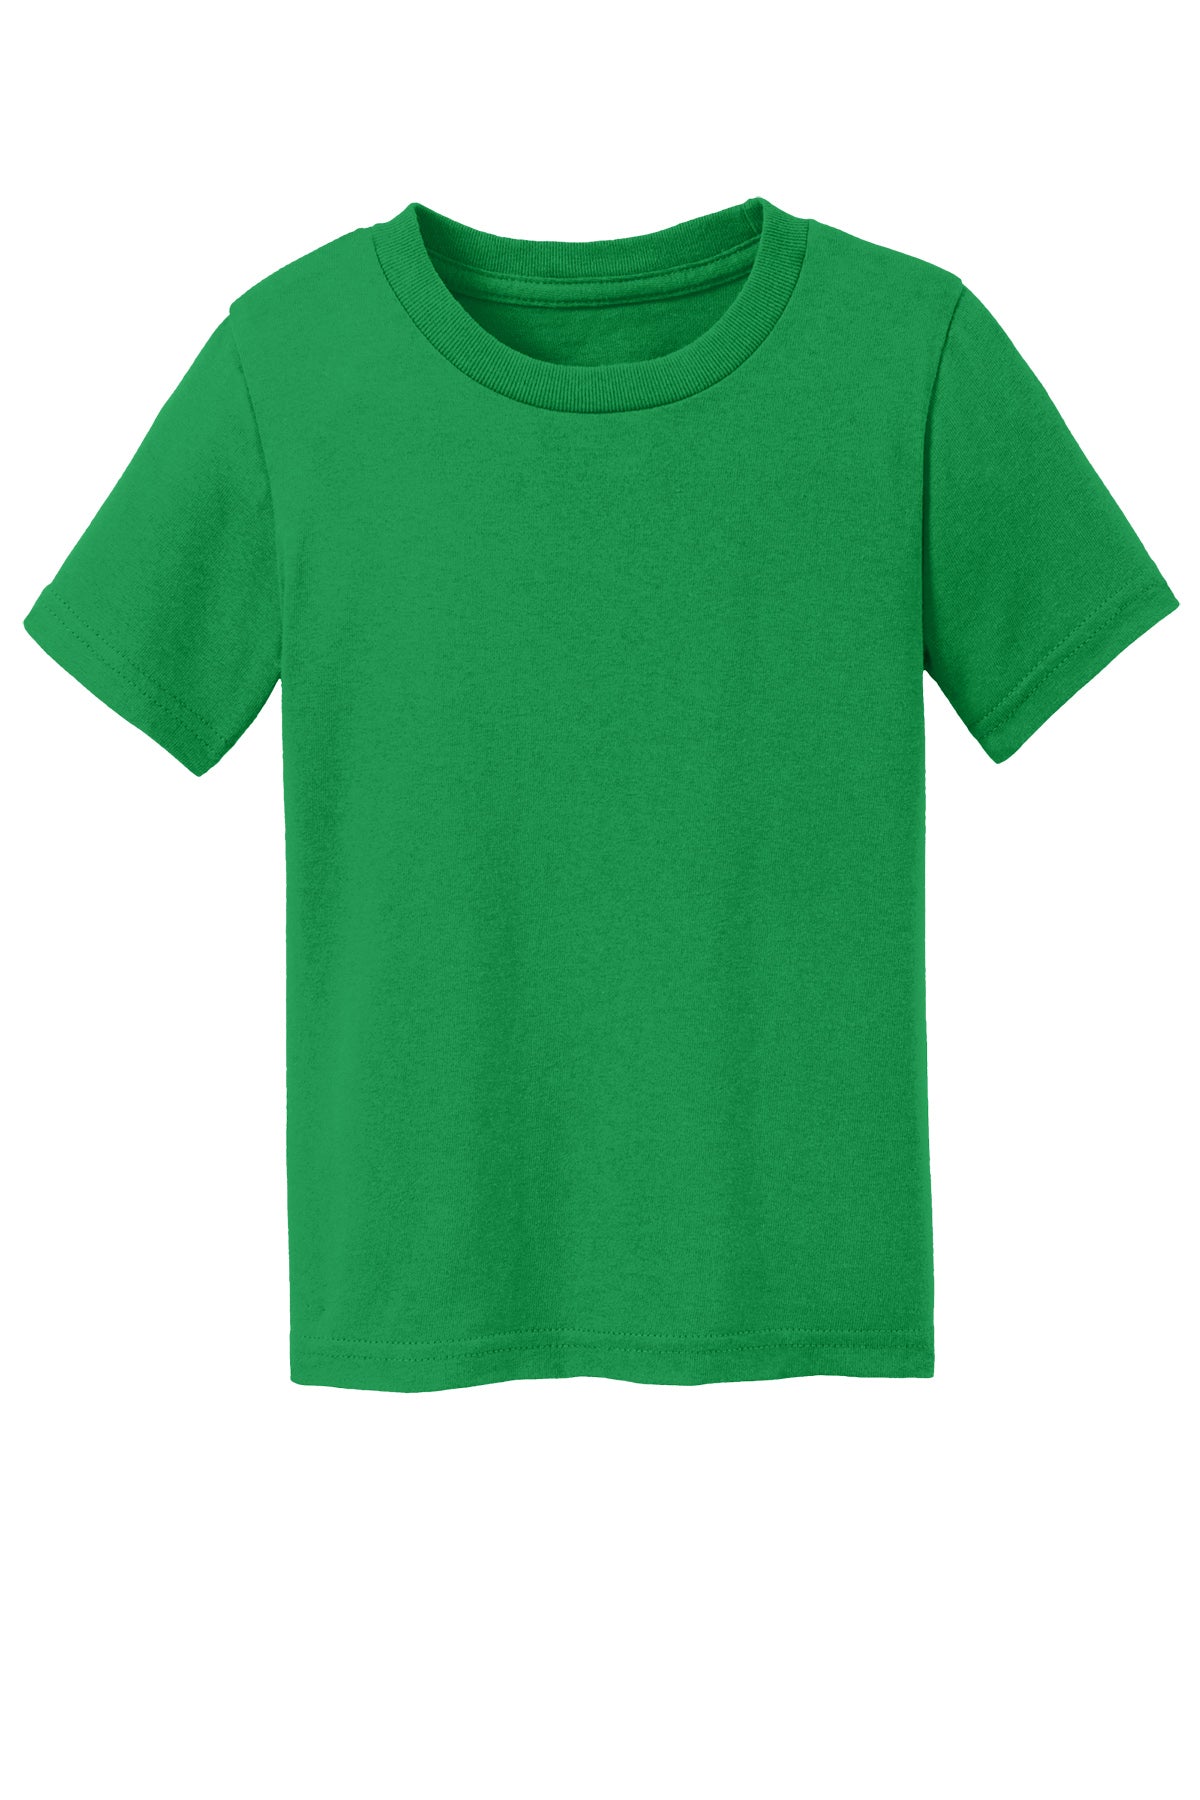 Port & Co Car54T Toddler T-Shirt 2T / Clover Green